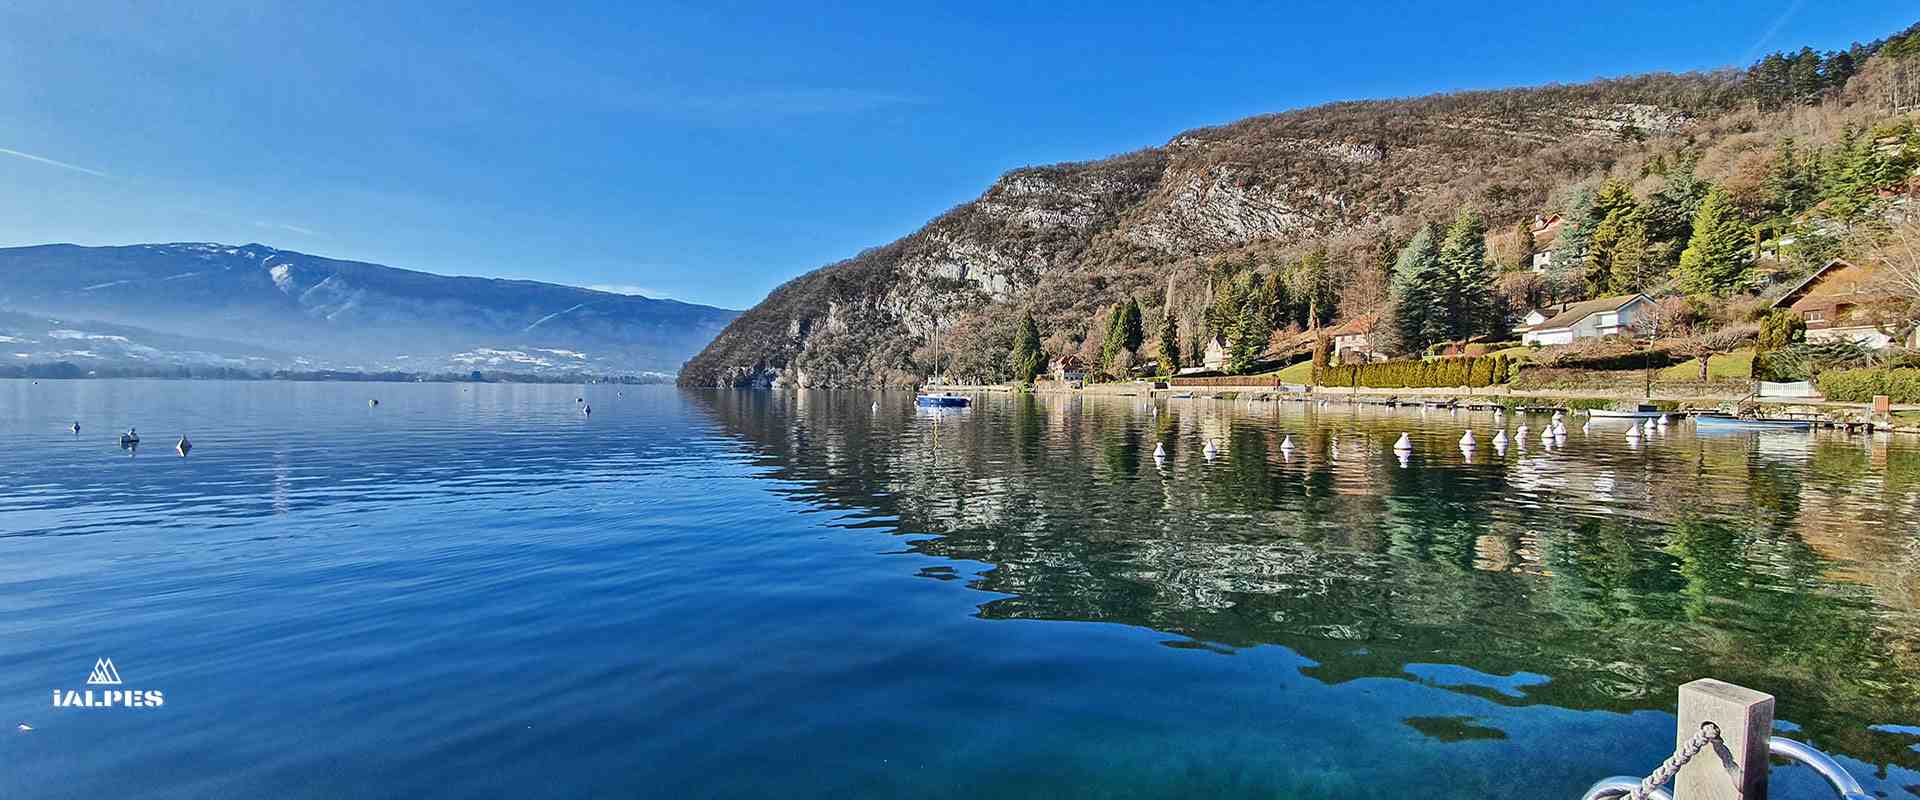 Talloires, port sur le lac d'Annecy, Haute-Savoie